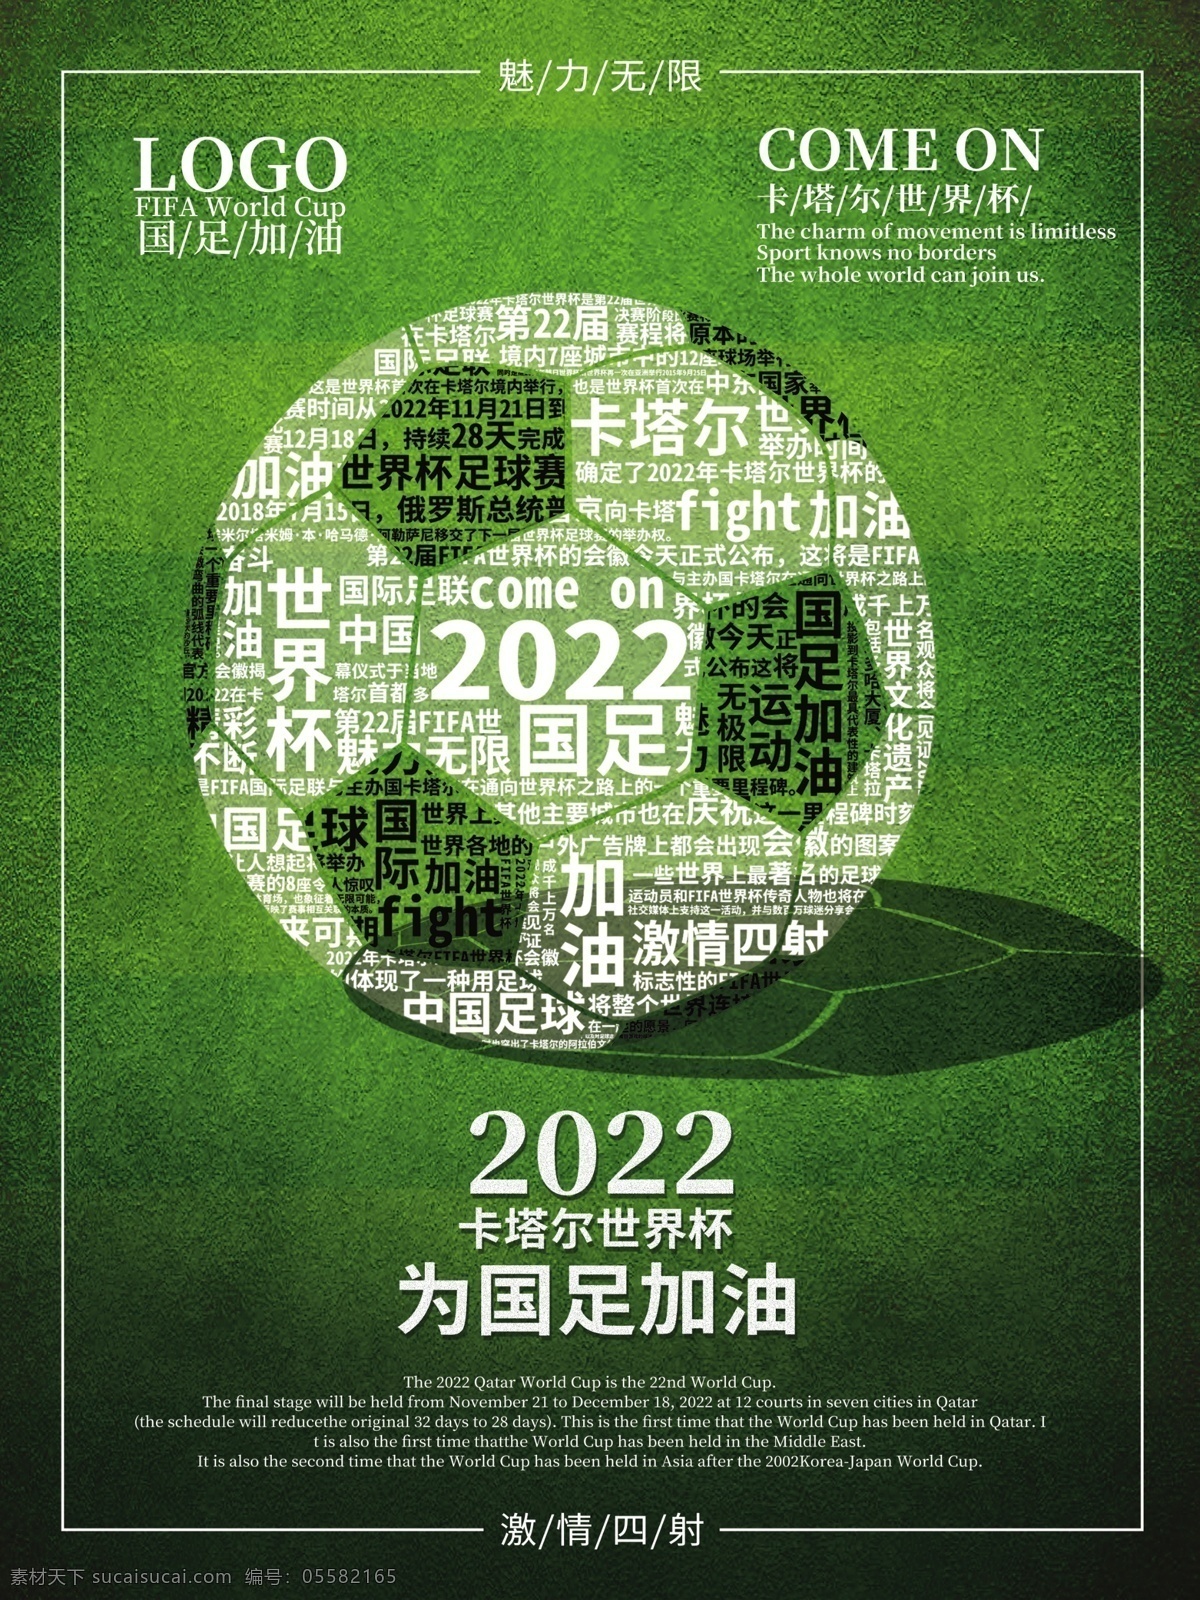 2022 卡塔尔 世界杯 国足 加油 世界 为国足加油 原创素材 足球比赛 宣传海报 中国足球 体育海报